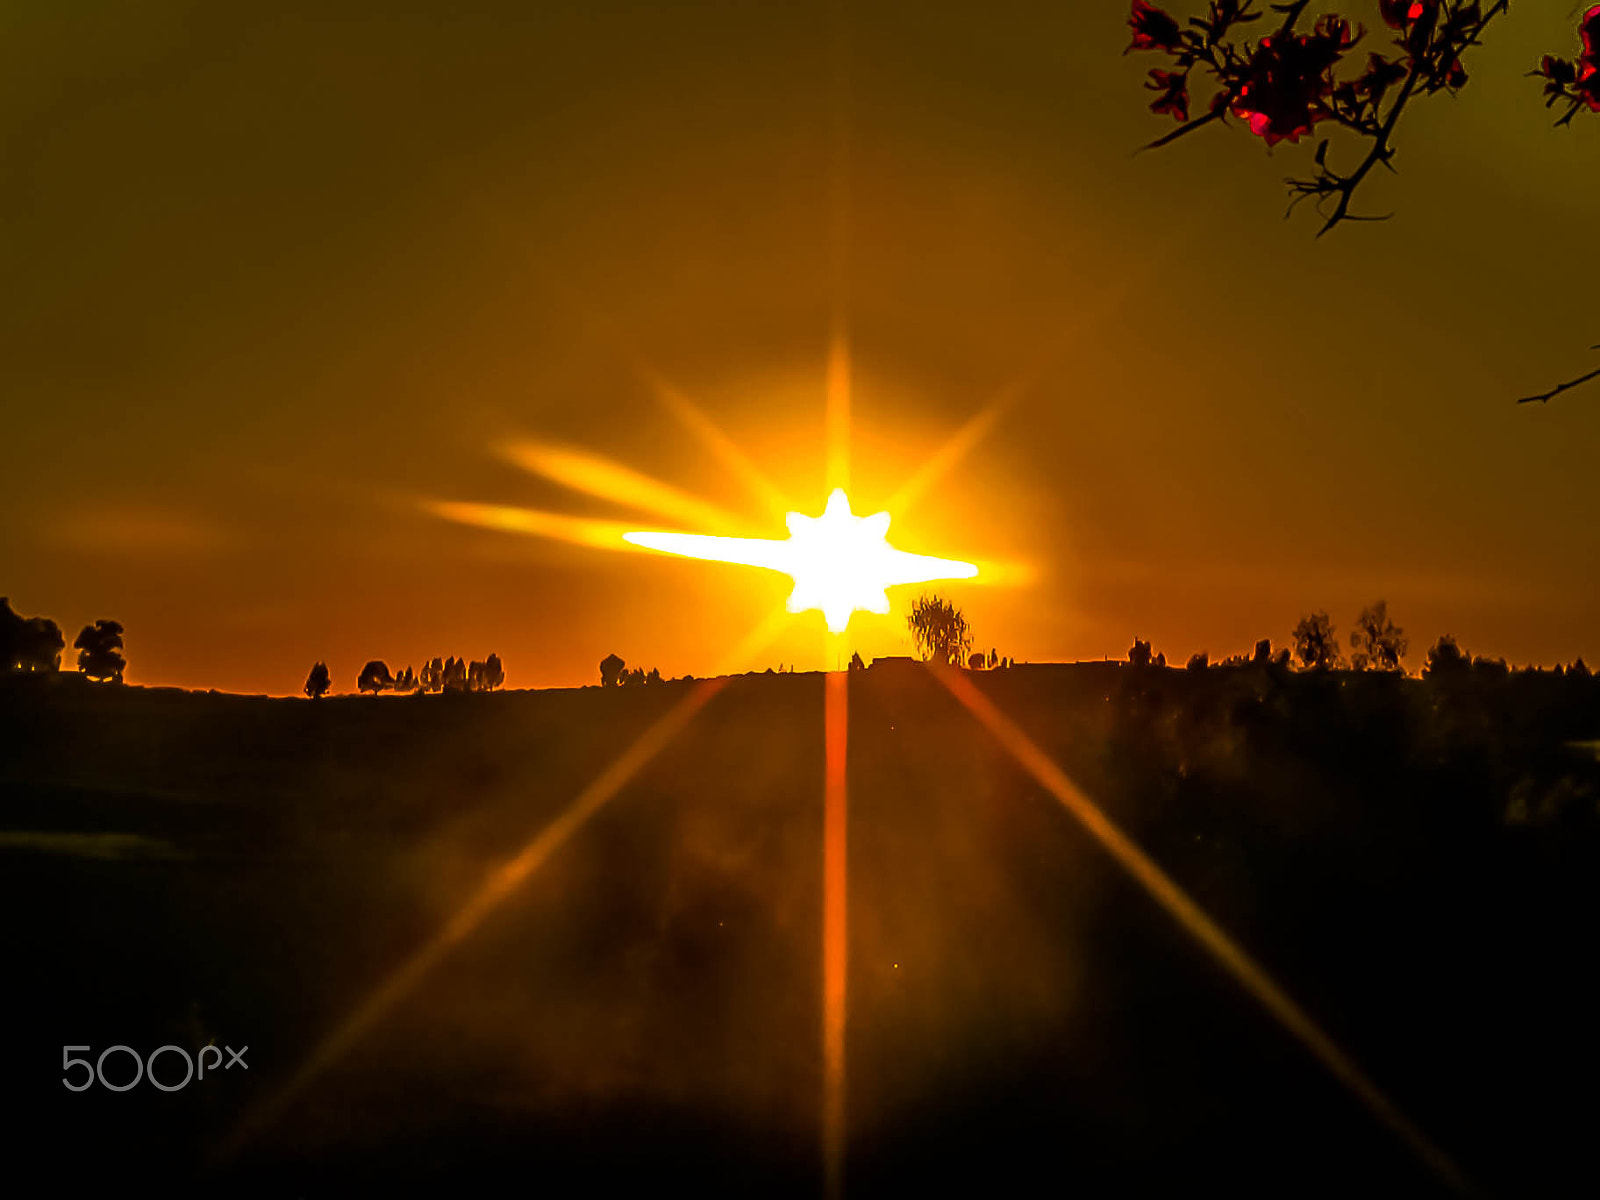 Canon PowerShot SD4500 IS (IXUS 1000 HS / IXY 50S) sample photo. Sun sunset photography